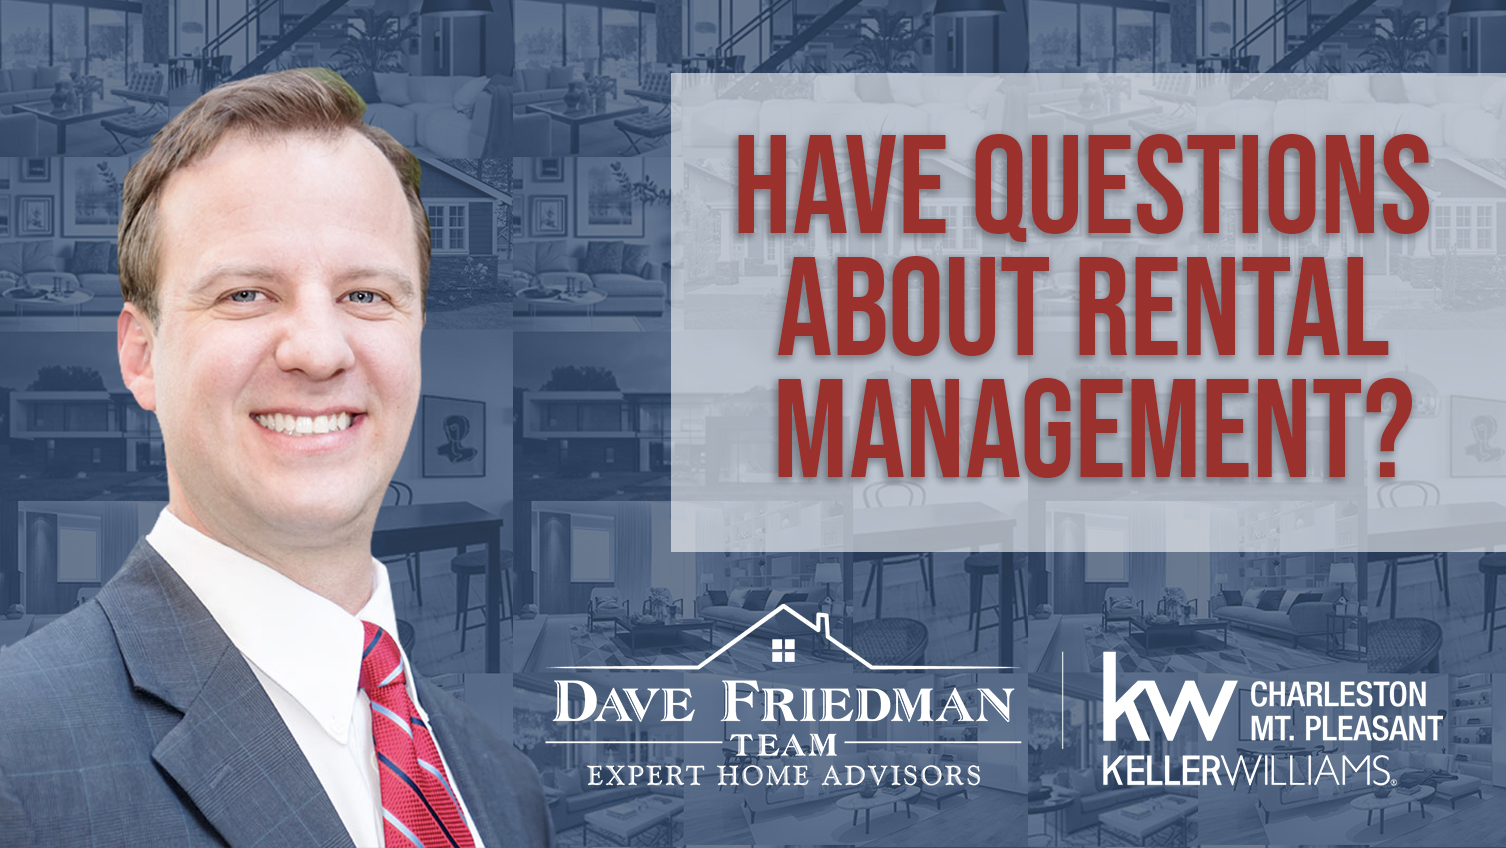 Q: Have Questions About Rental Management?